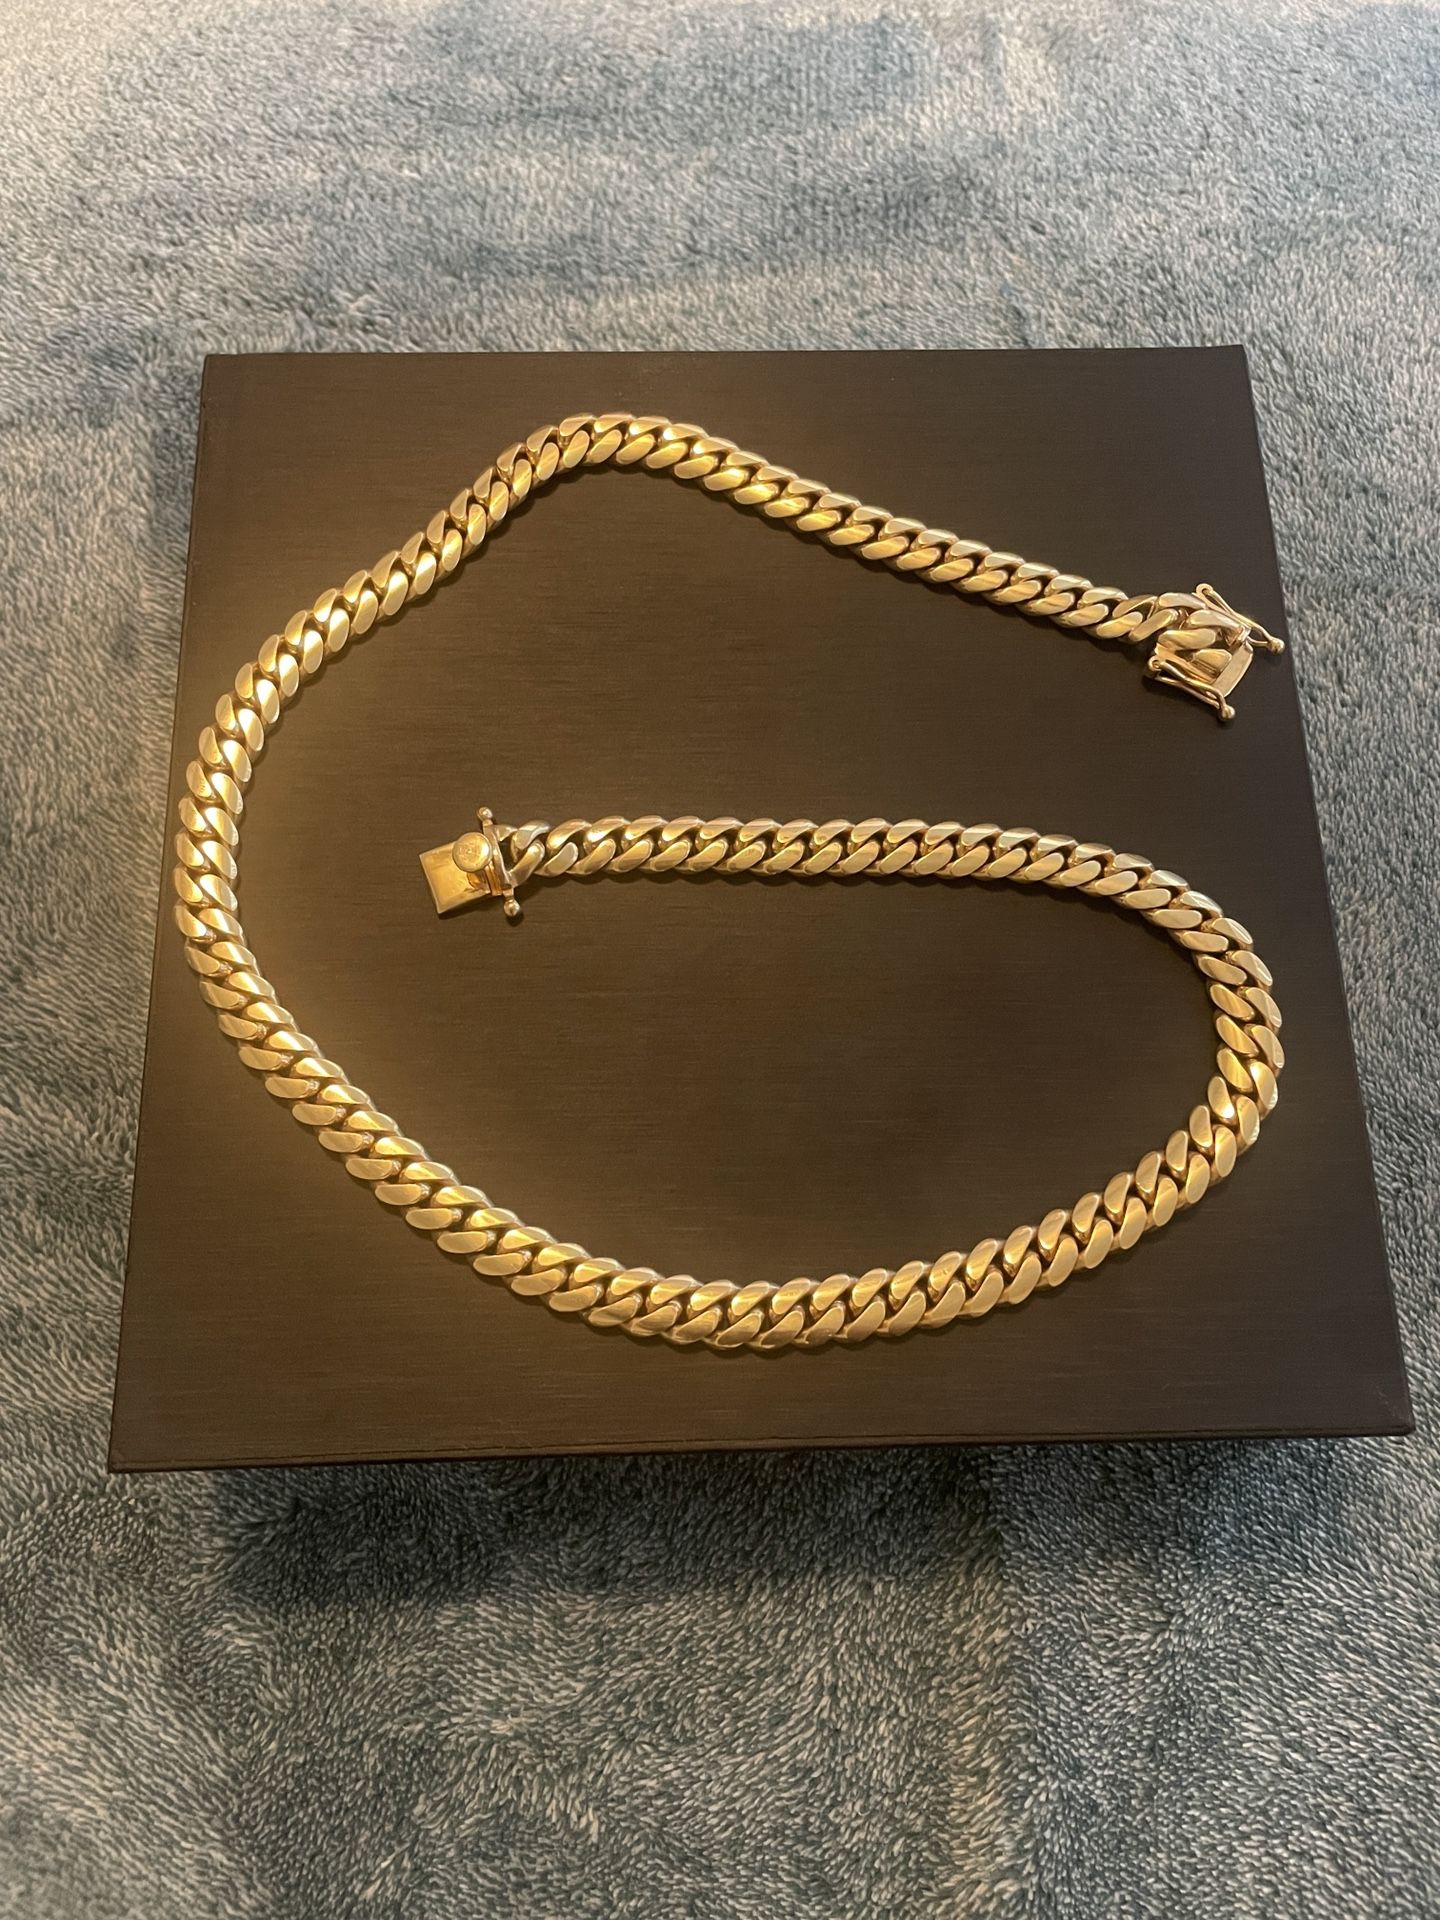 14k Miami Cuban Chain Necklace 